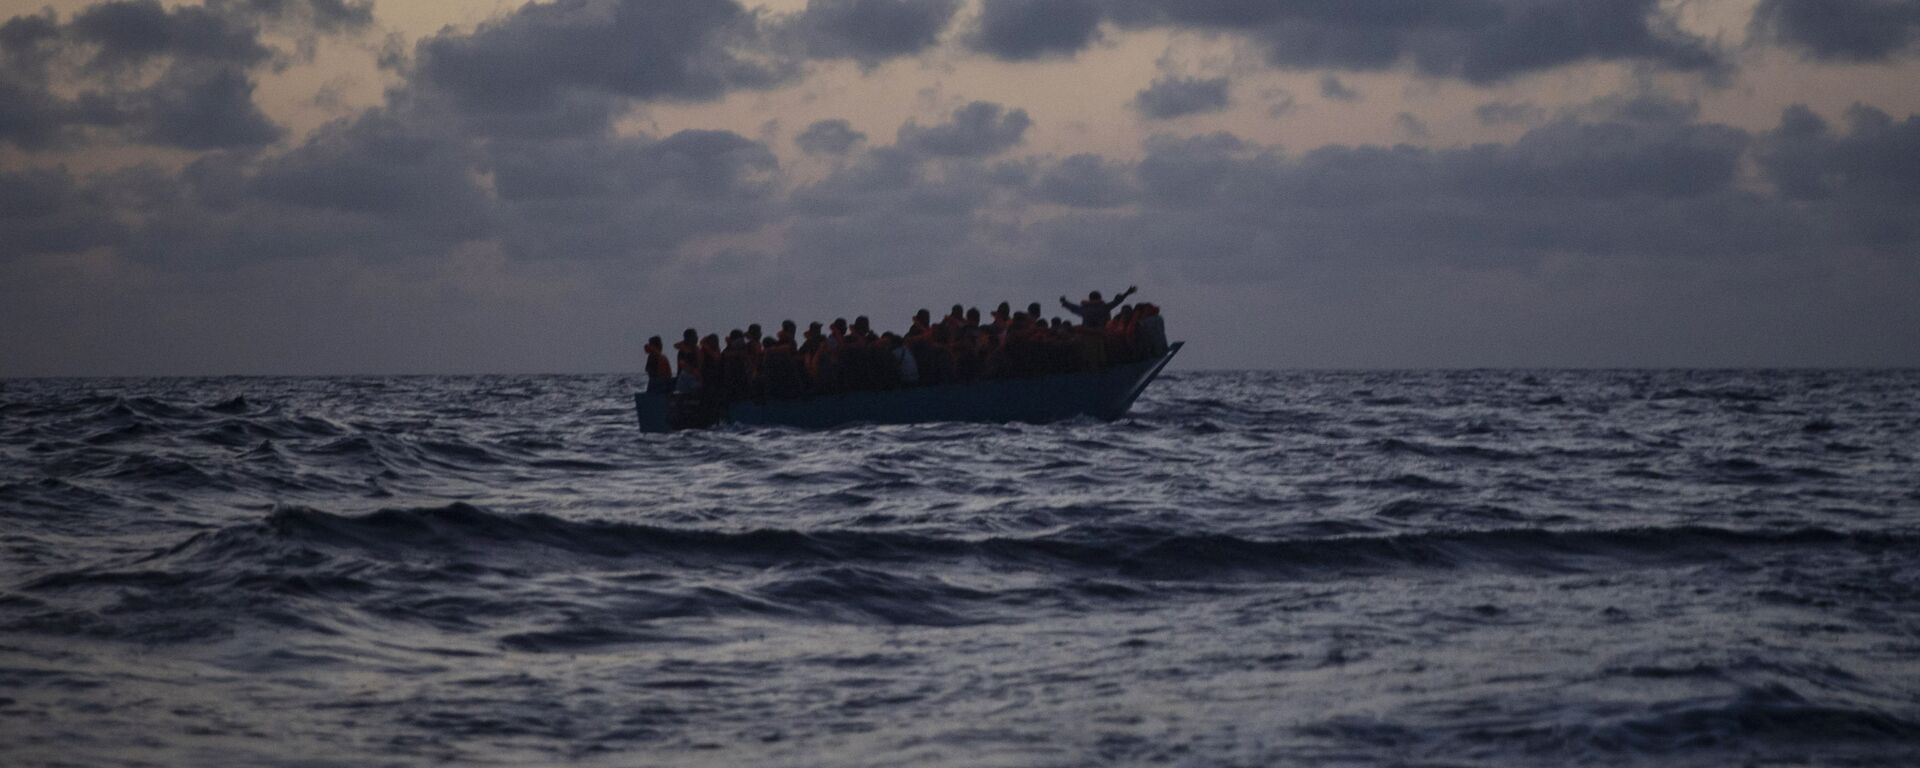 Inmigrantes esperan ser rescatados en el Mar Mediterráneo - Sputnik Mundo, 1920, 27.01.2021